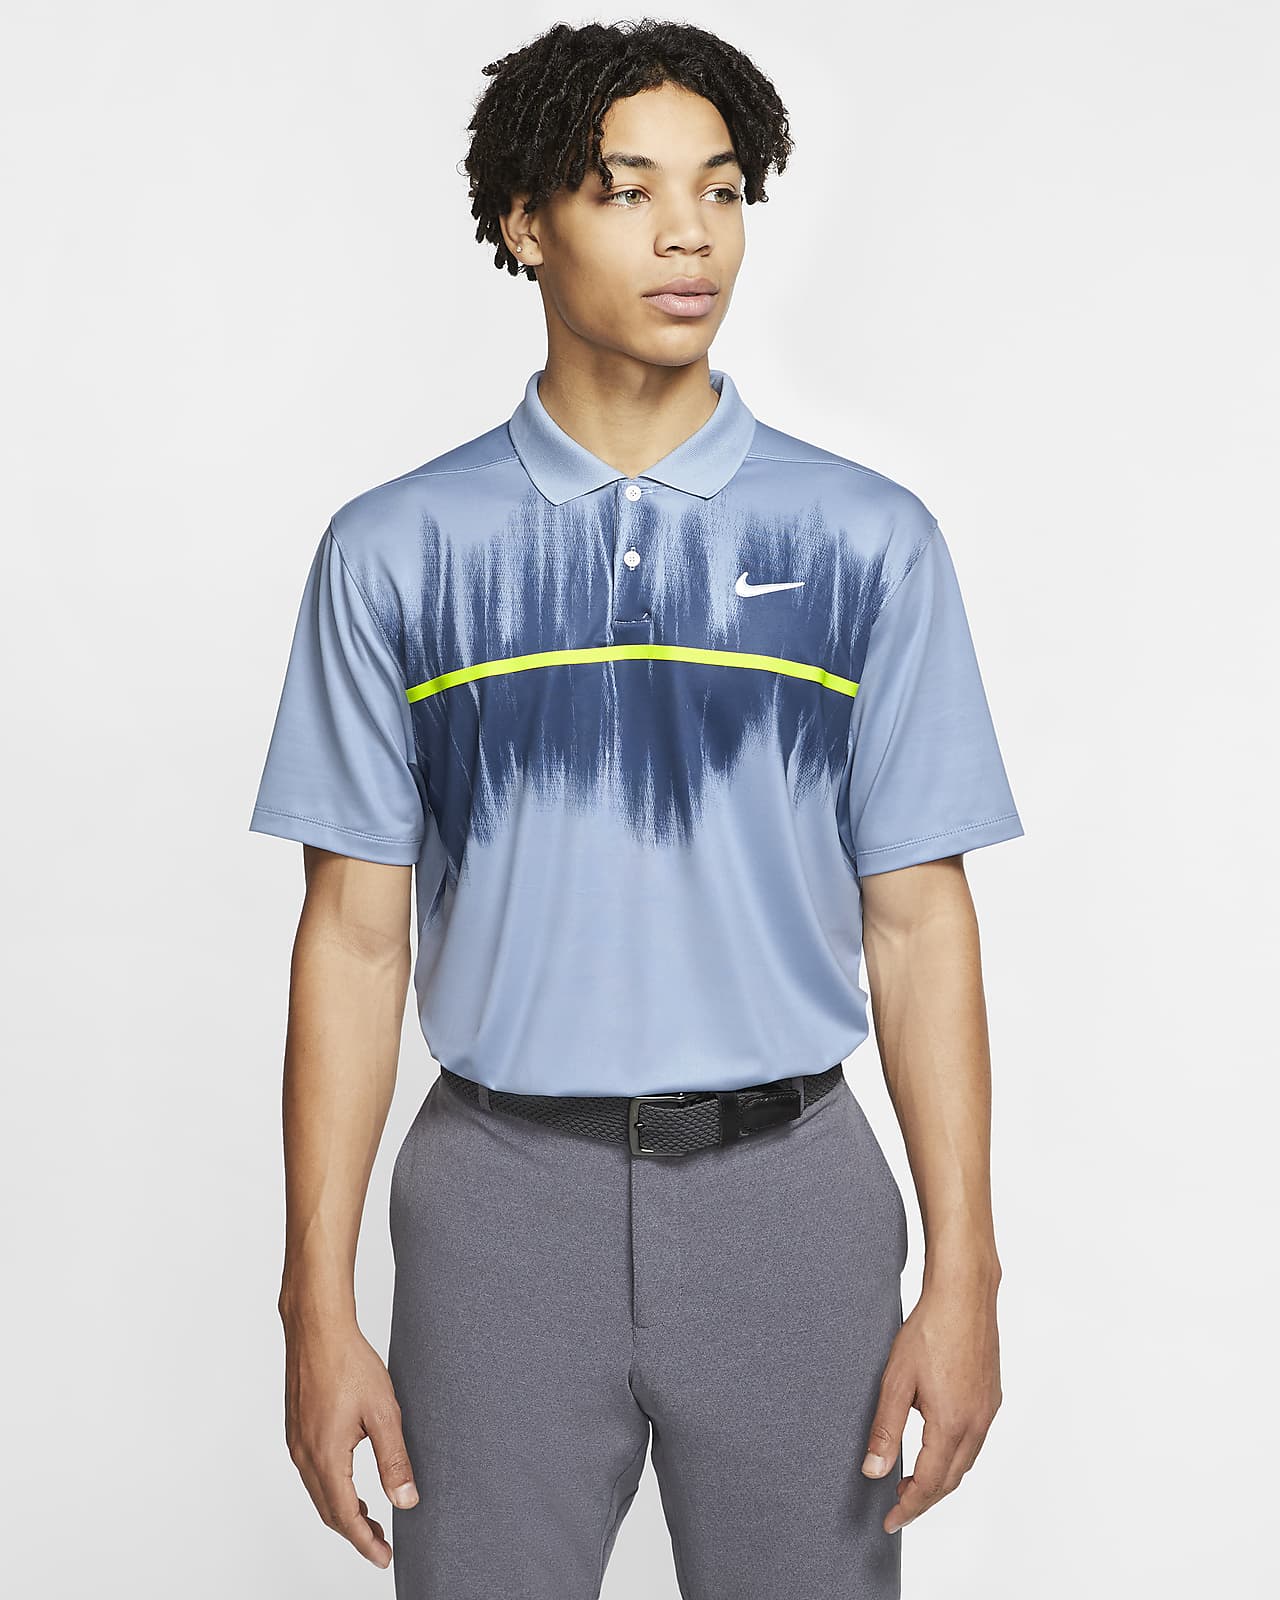 Nike Dri-FIT Vapor Men's Printed Golf 